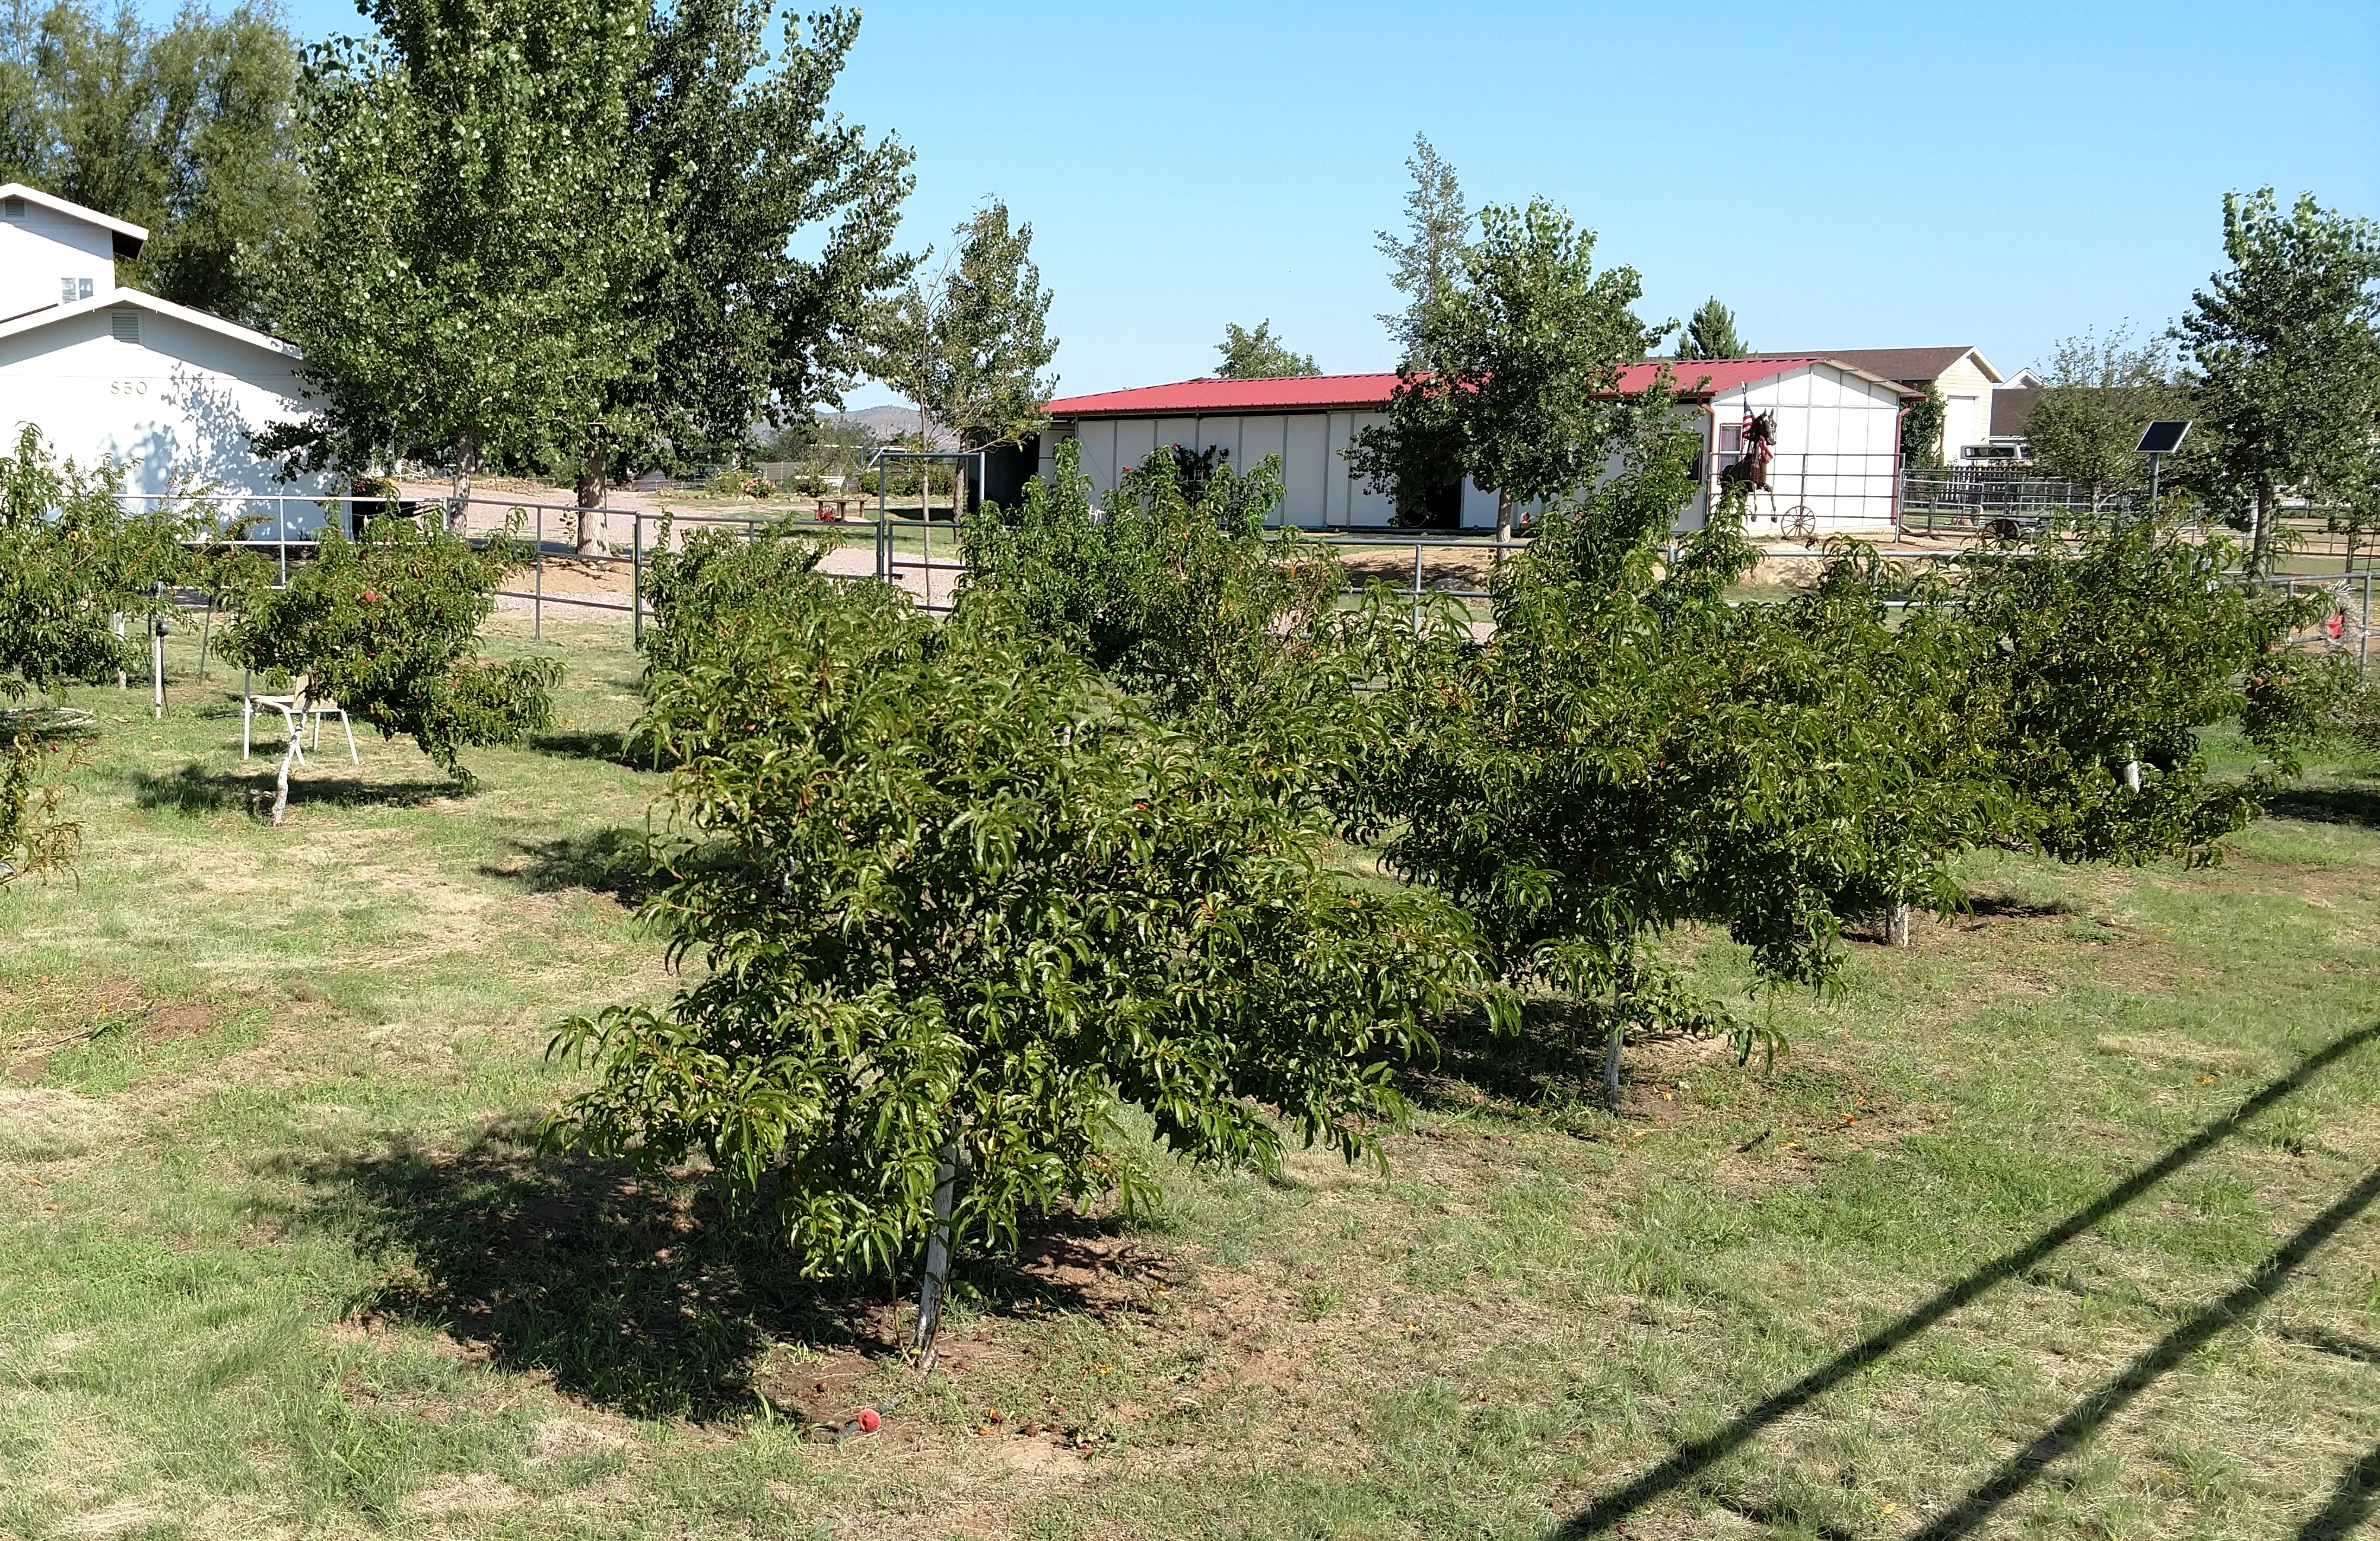 Backyard Gardener Establishing A Home Fruit Orchard November 27 2019